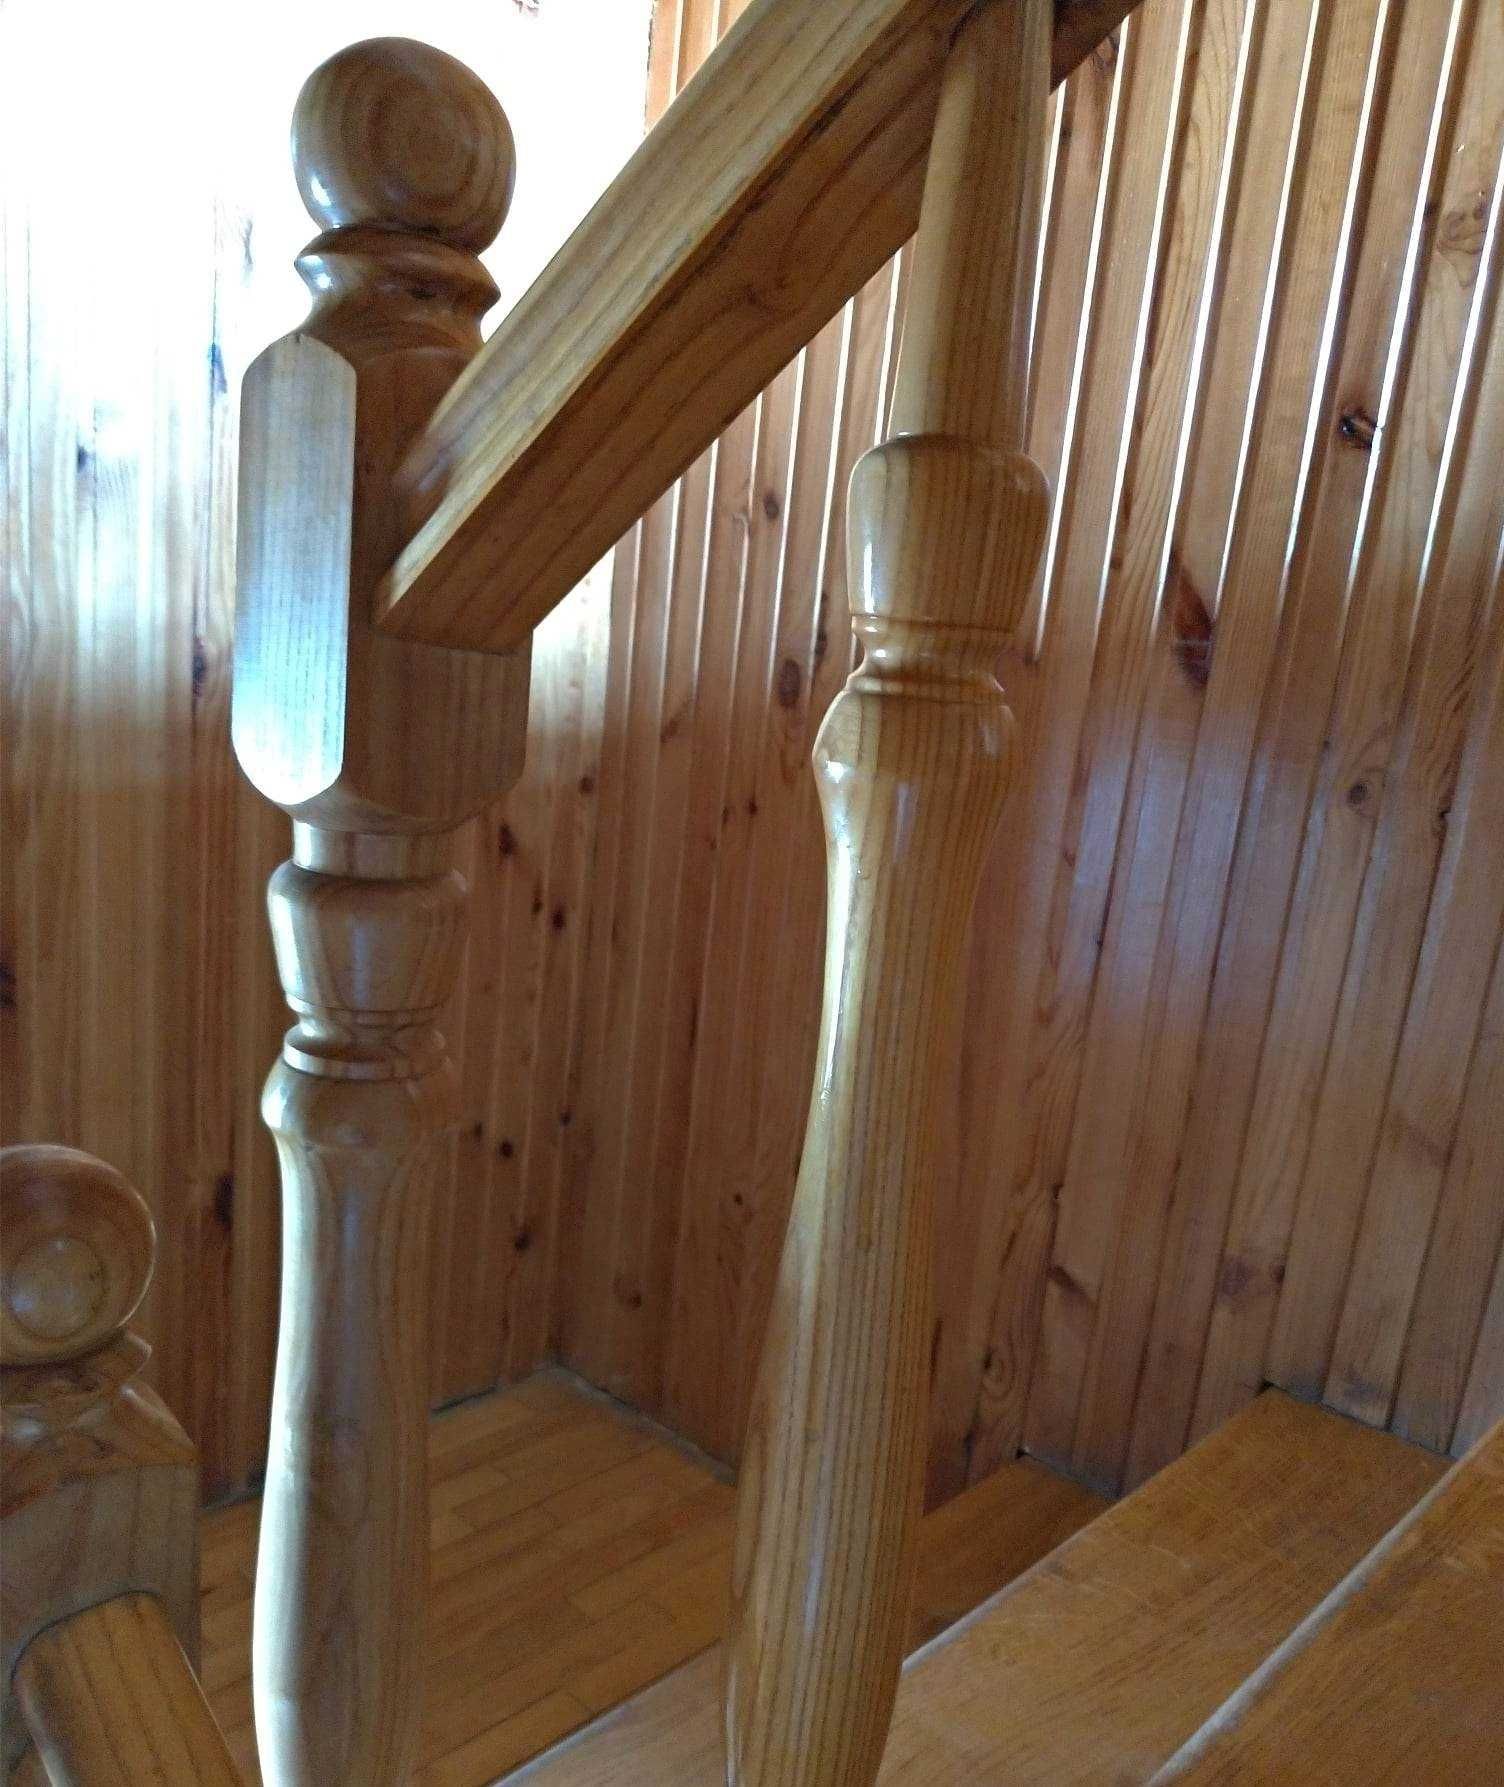 Toczenie w drewnie CNC, podzespoły do schodów, mebli, walce, kantówki